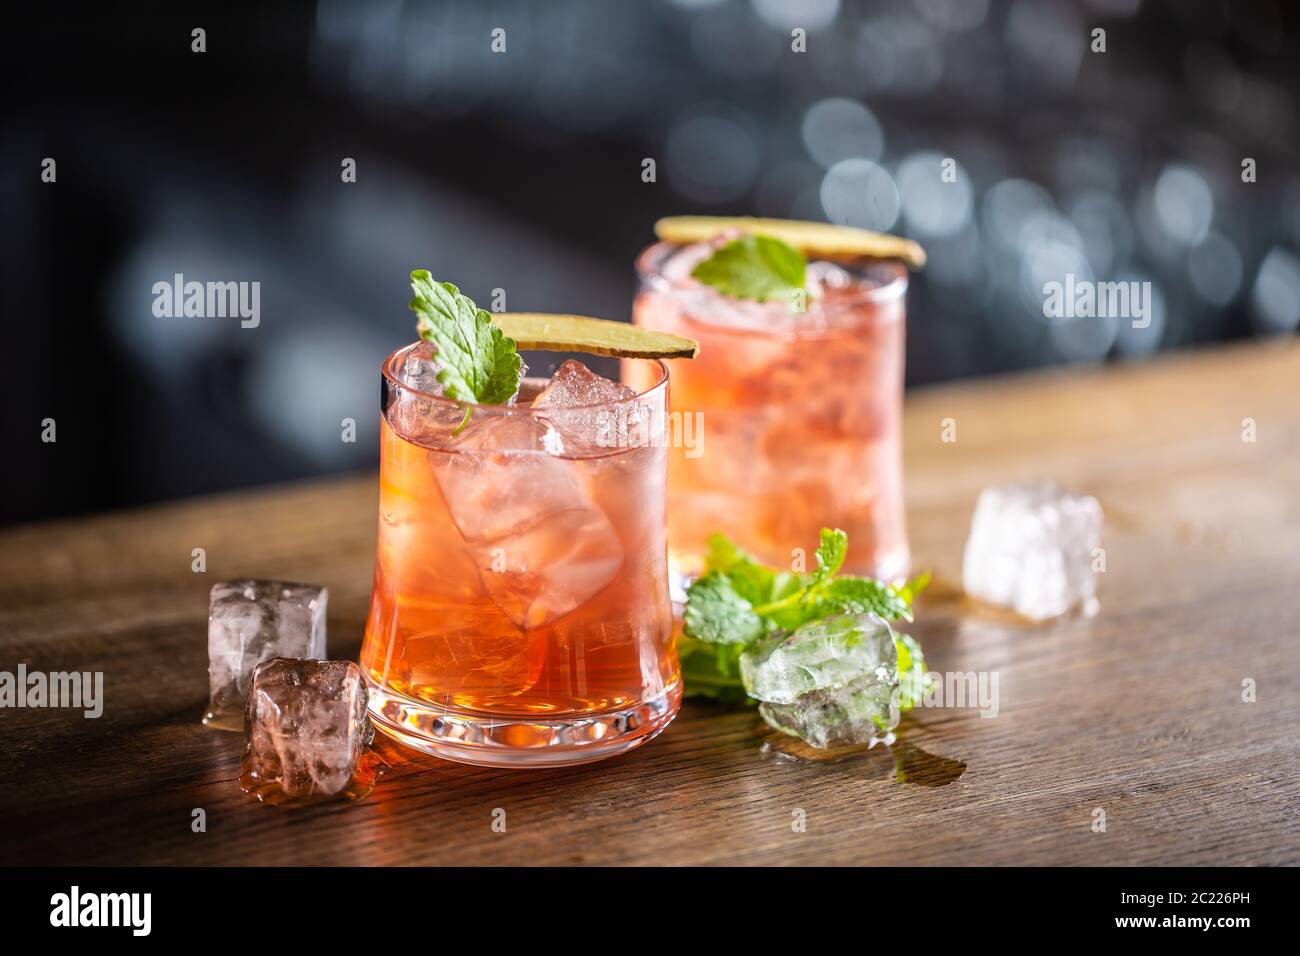 Cocktail de brise marine avec glace et menthe fraîche, sur fond sombre Banque D'Images